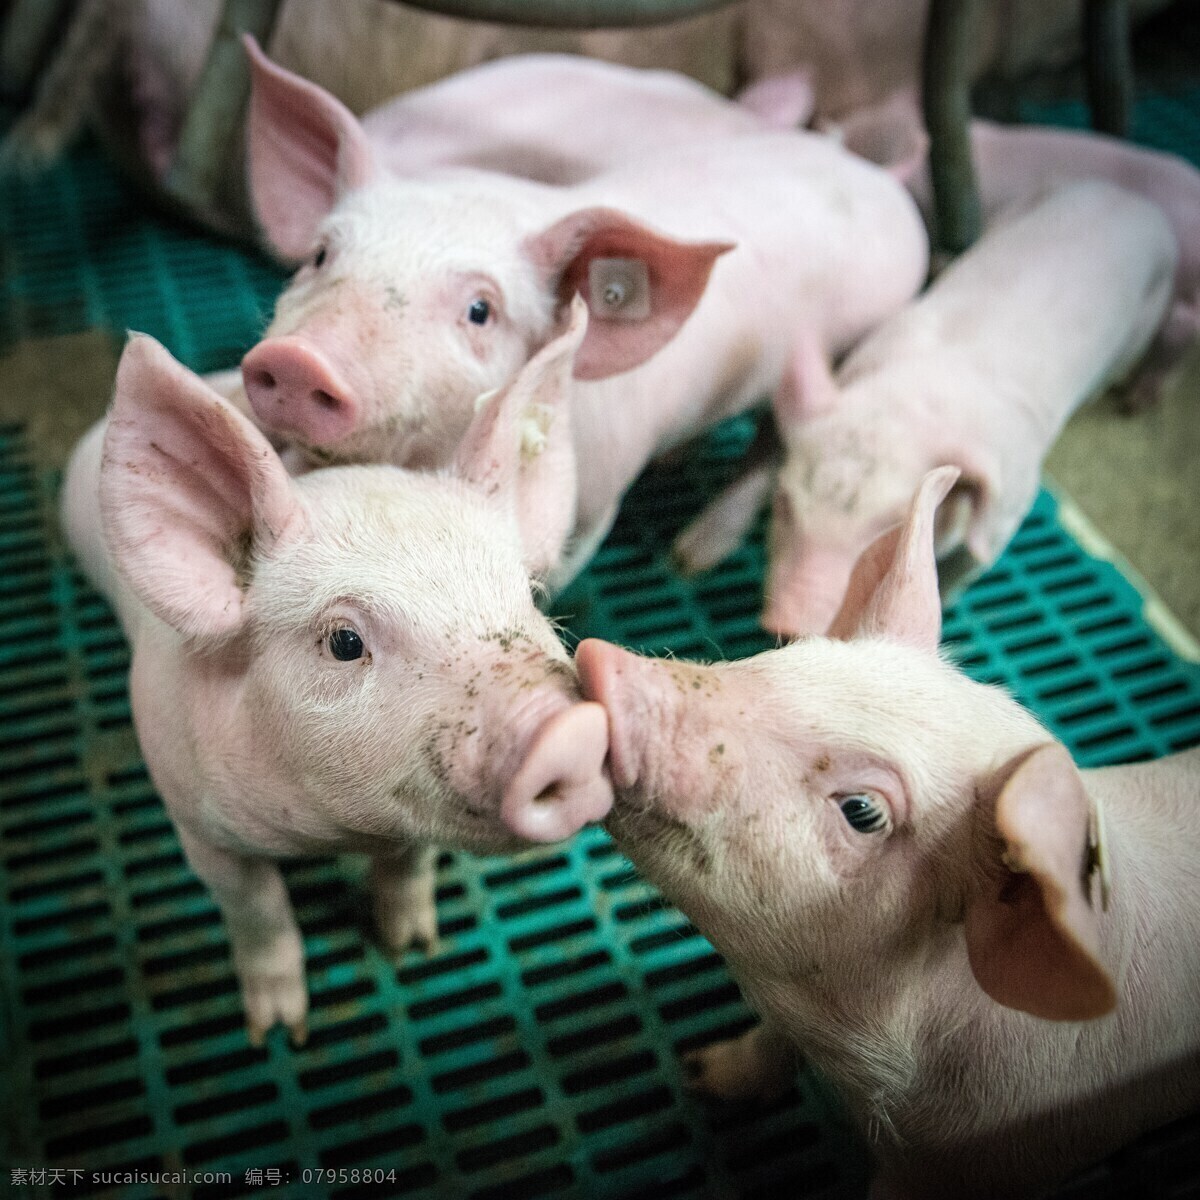 小猪 小猪的谷仓 失速 畜牧业 农场 农业 牲畜 动物 猪圈 养猪 养殖业 生物世界 家禽家畜